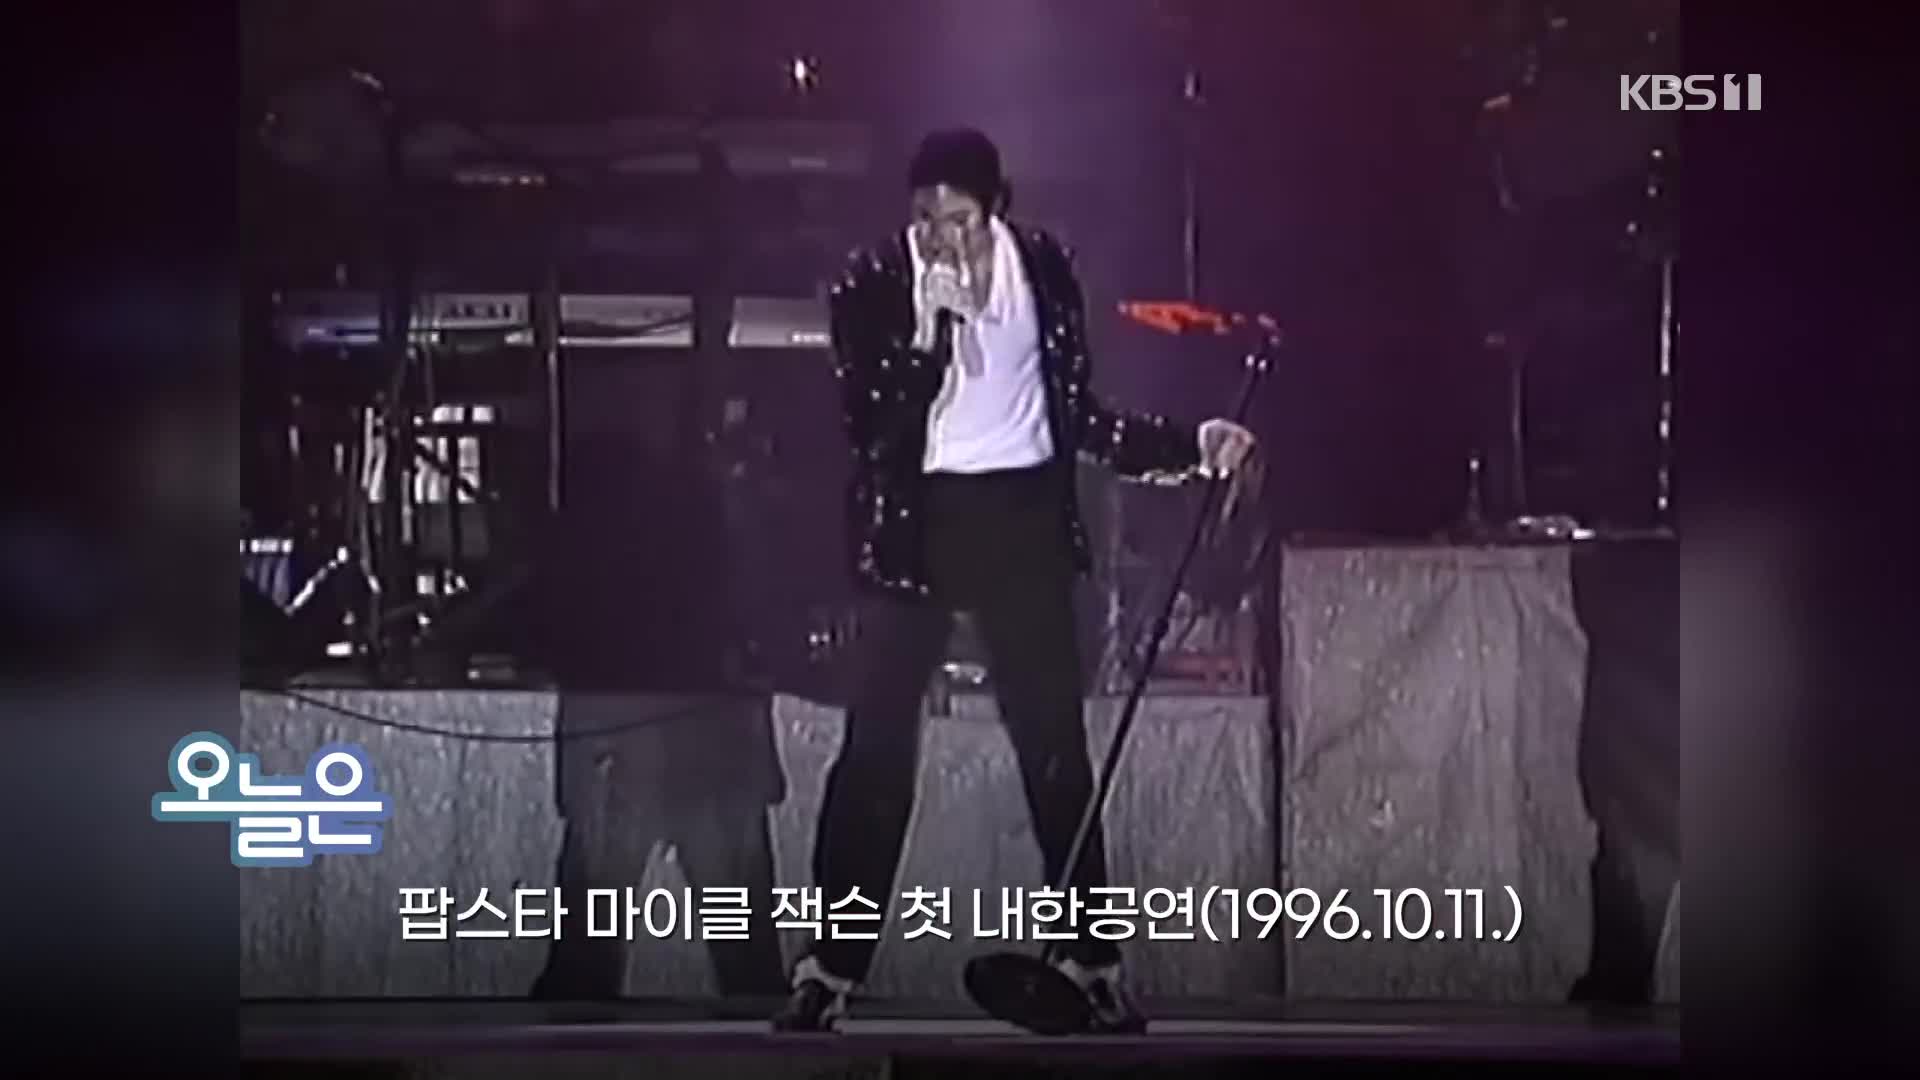 [오늘은] 팝스타 마이클 잭슨 첫 내한공연(1996.10.11.)